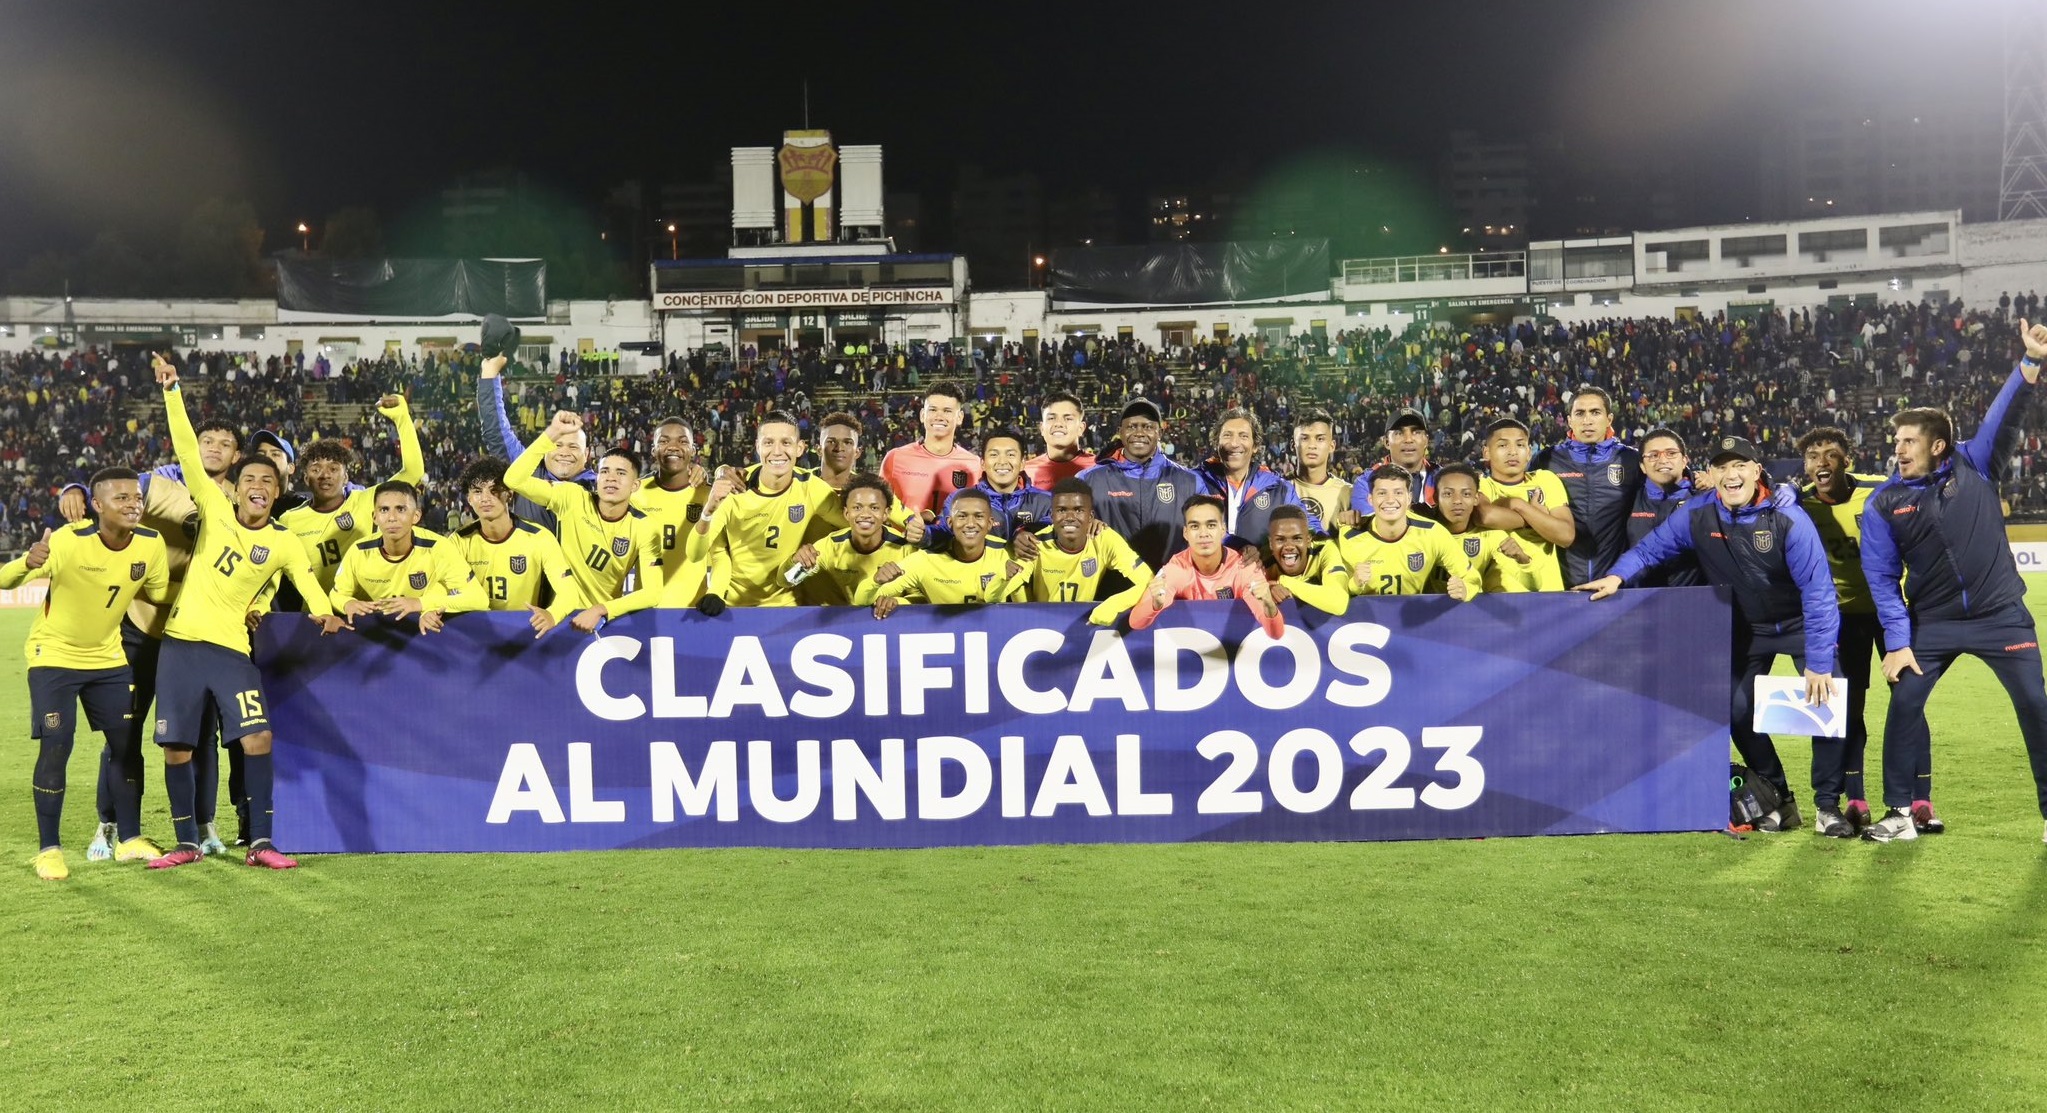 La Selección de Ecuador Sub-17 se conformó con jugadores de siete clubes y se clasificó al Mundial. Foto: FEF